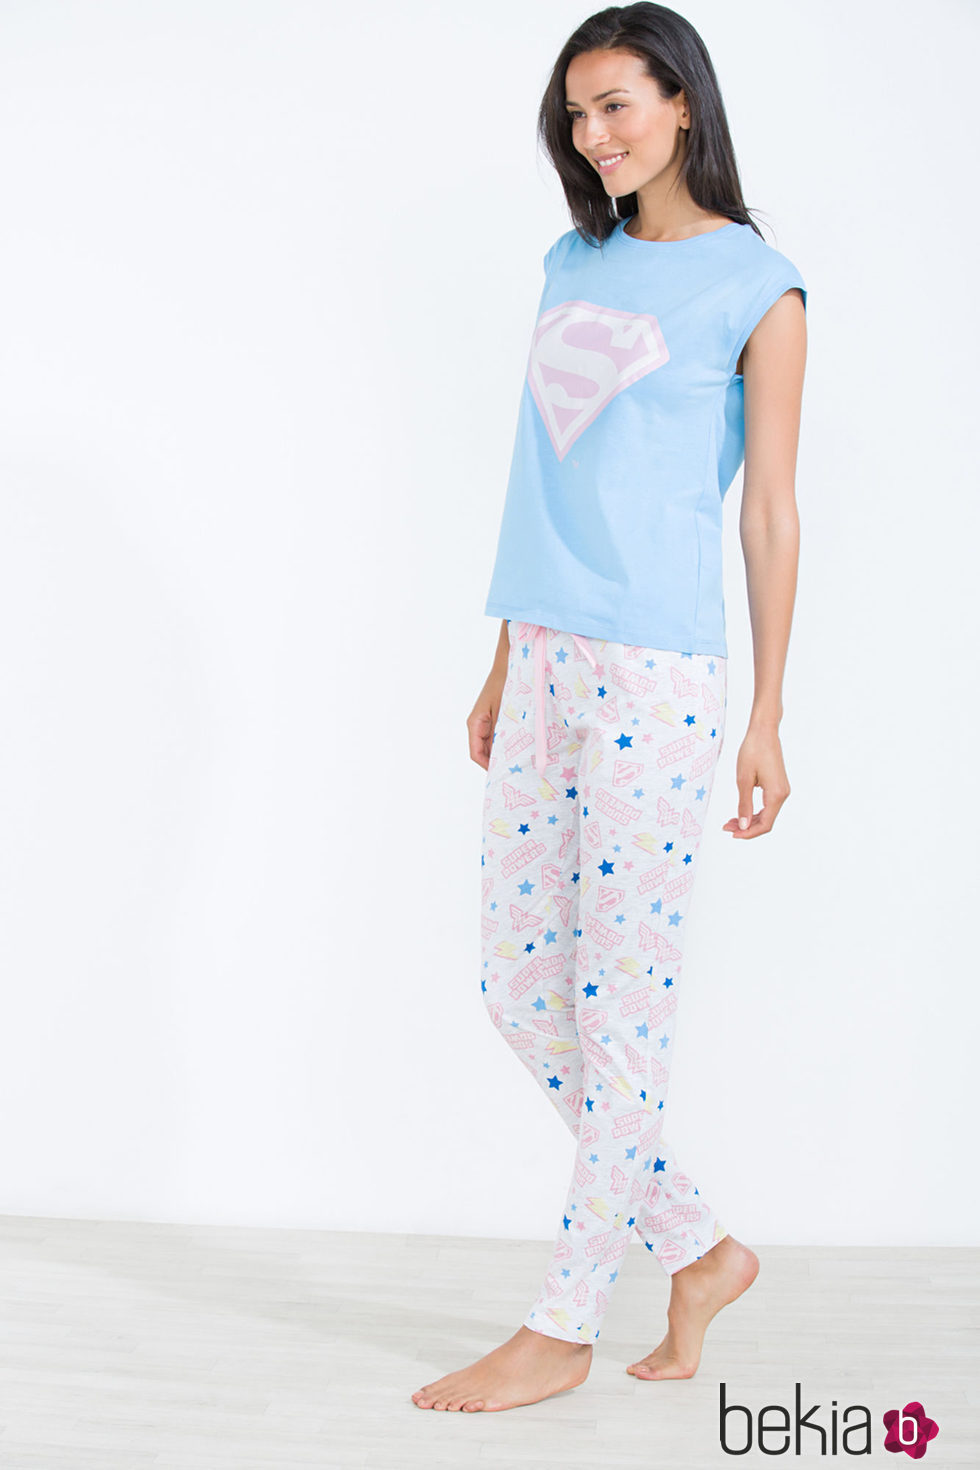 Modelo posando con pijama largo con insignia de Superman para la nueva colección 'Woder woman' de Women'secret